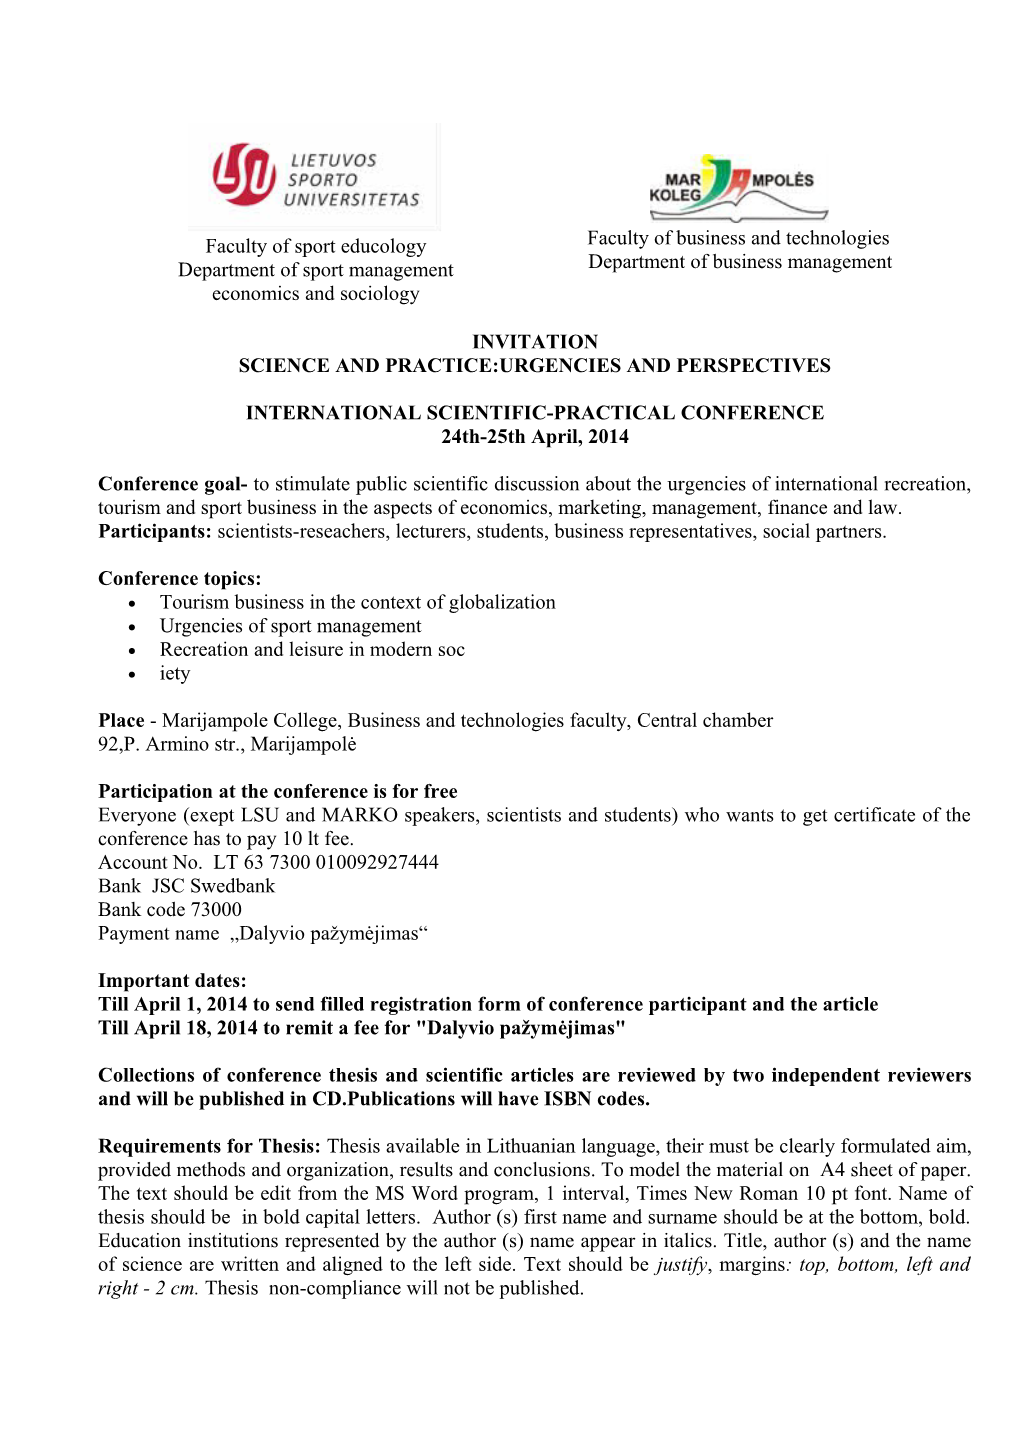 Tarptautinė Mokslinė Praktinė Konferencija Mokslas Ir Praktika: Aktualijos Ir Perspektyvos